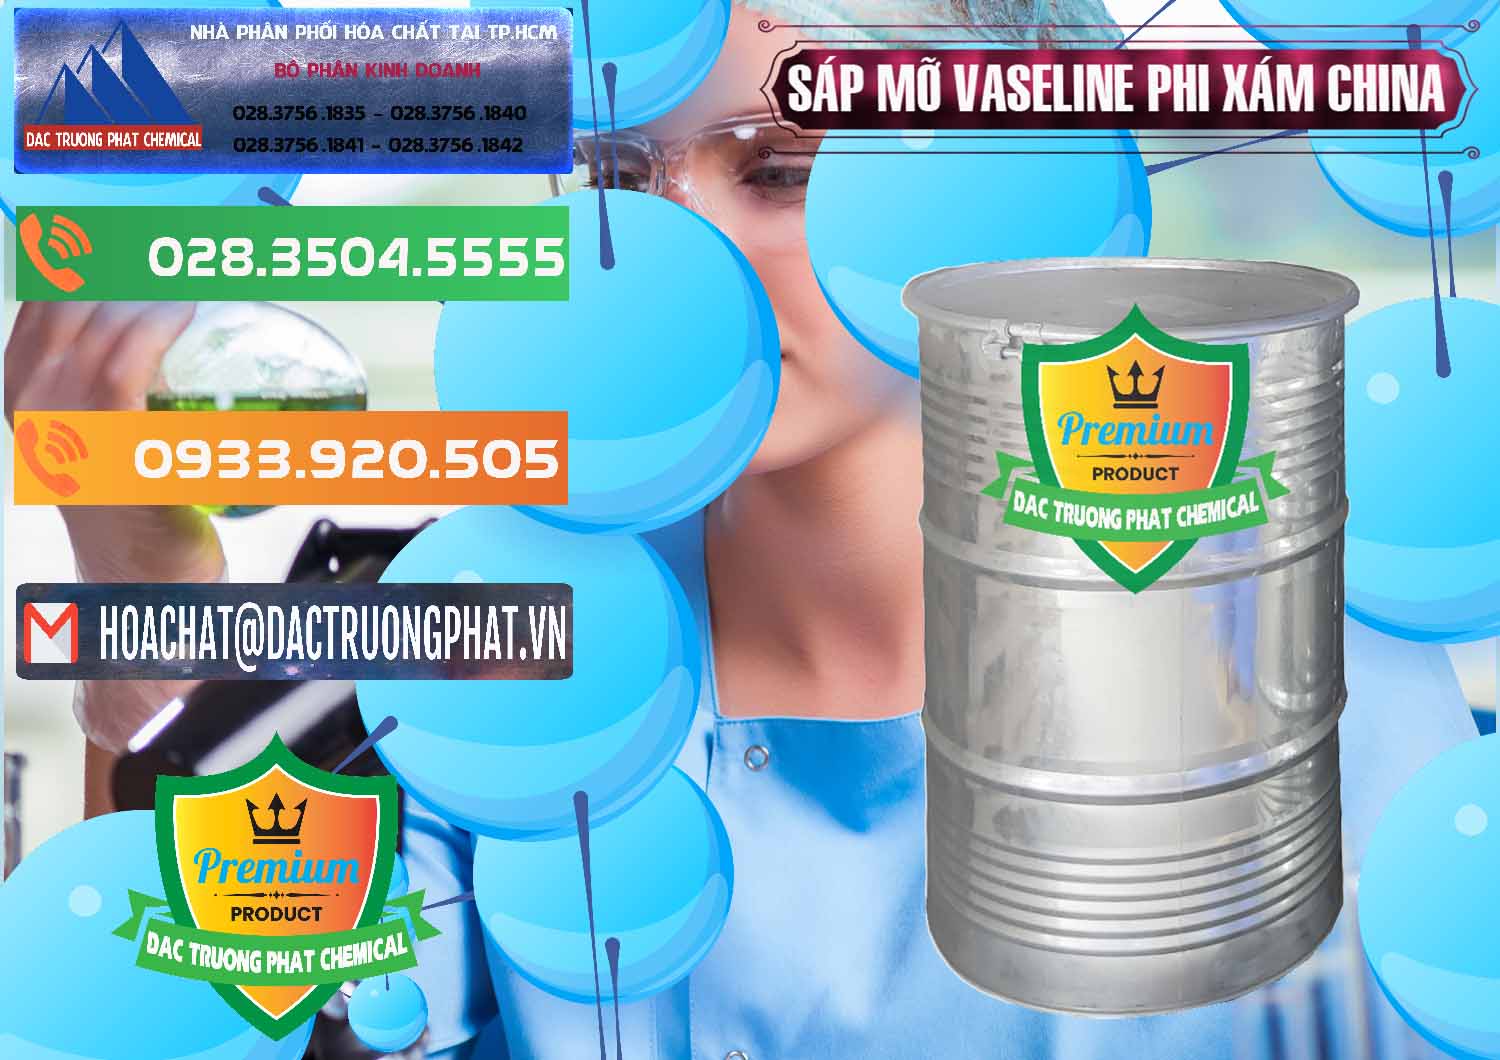 Công ty chuyên cung ứng & bán Sáp Mỡ Vaseline Phi Xám Trung Quốc China - 0291 - Đơn vị chuyên kinh doanh & cung cấp hóa chất tại TP.HCM - hoachatxulynuoc.com.vn